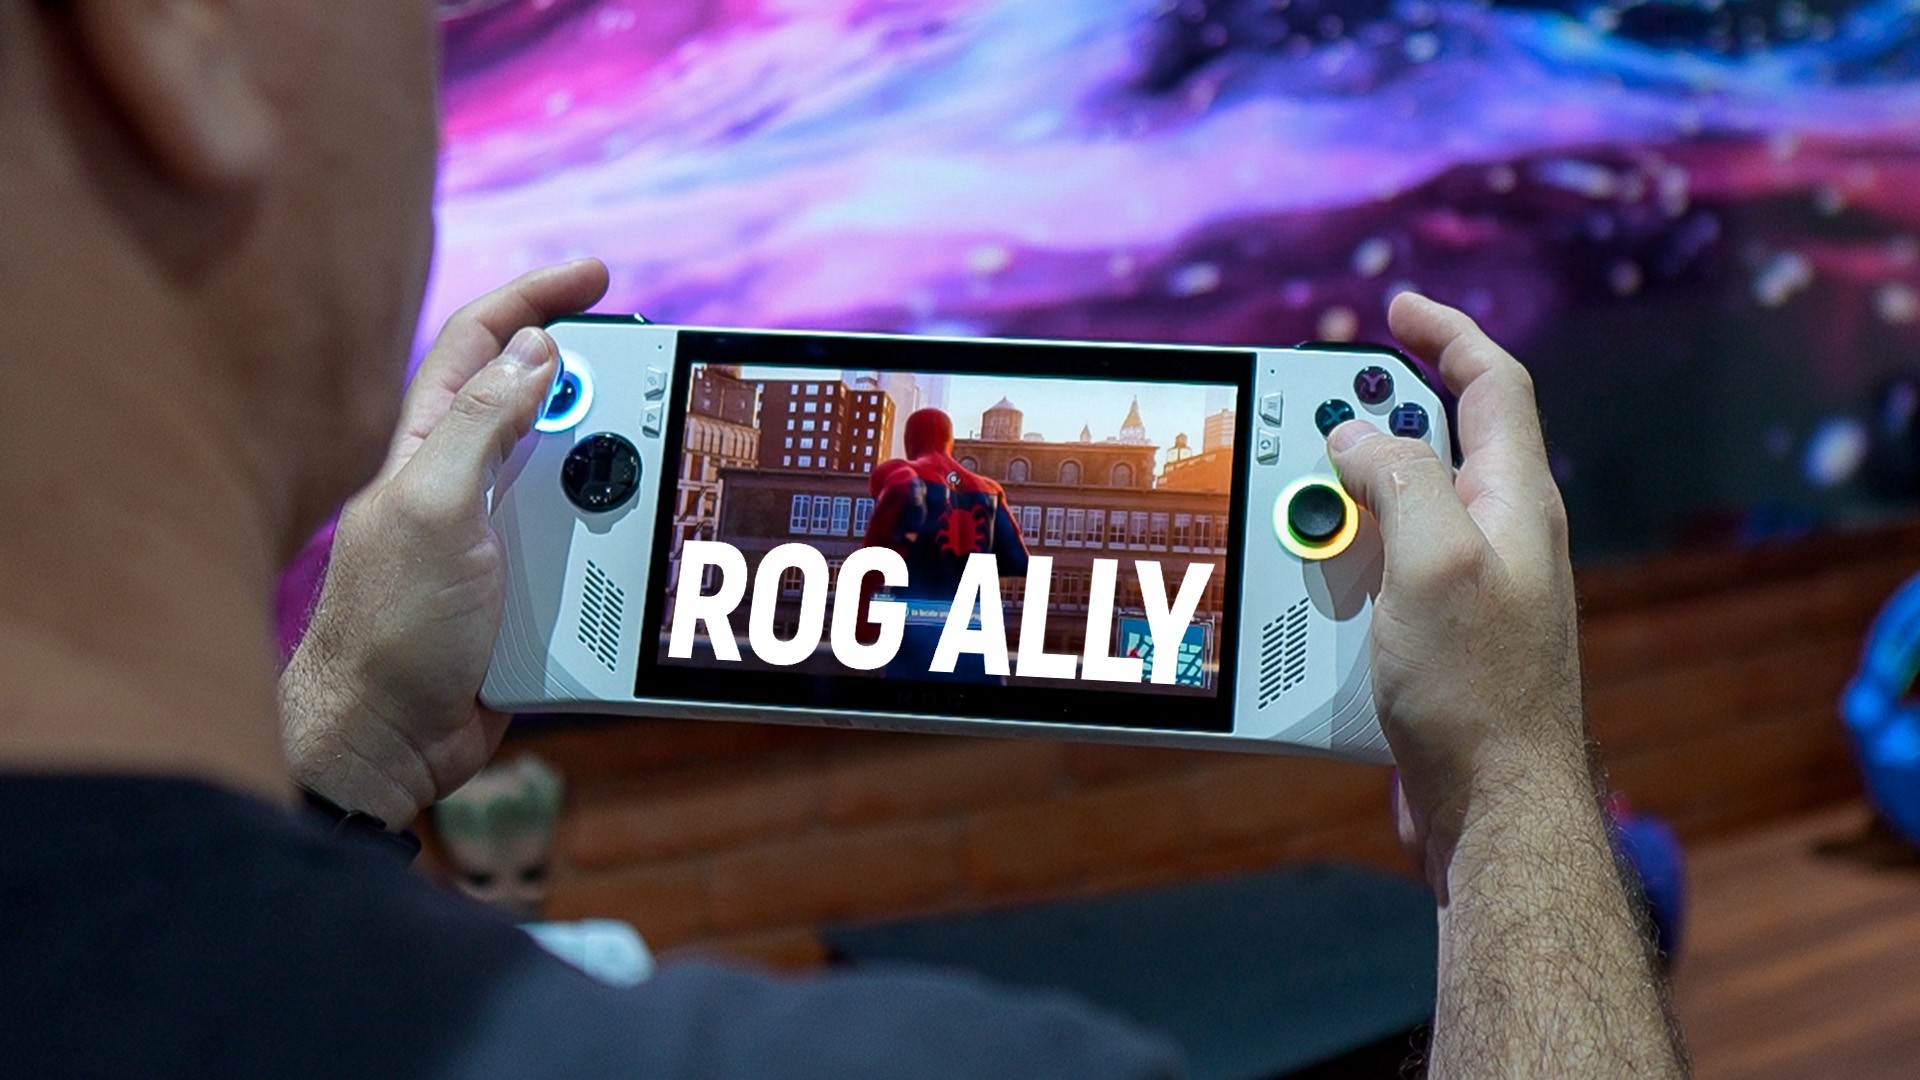 ASUS ROG Ally: o melhor desempenho para um console portátil, mas o